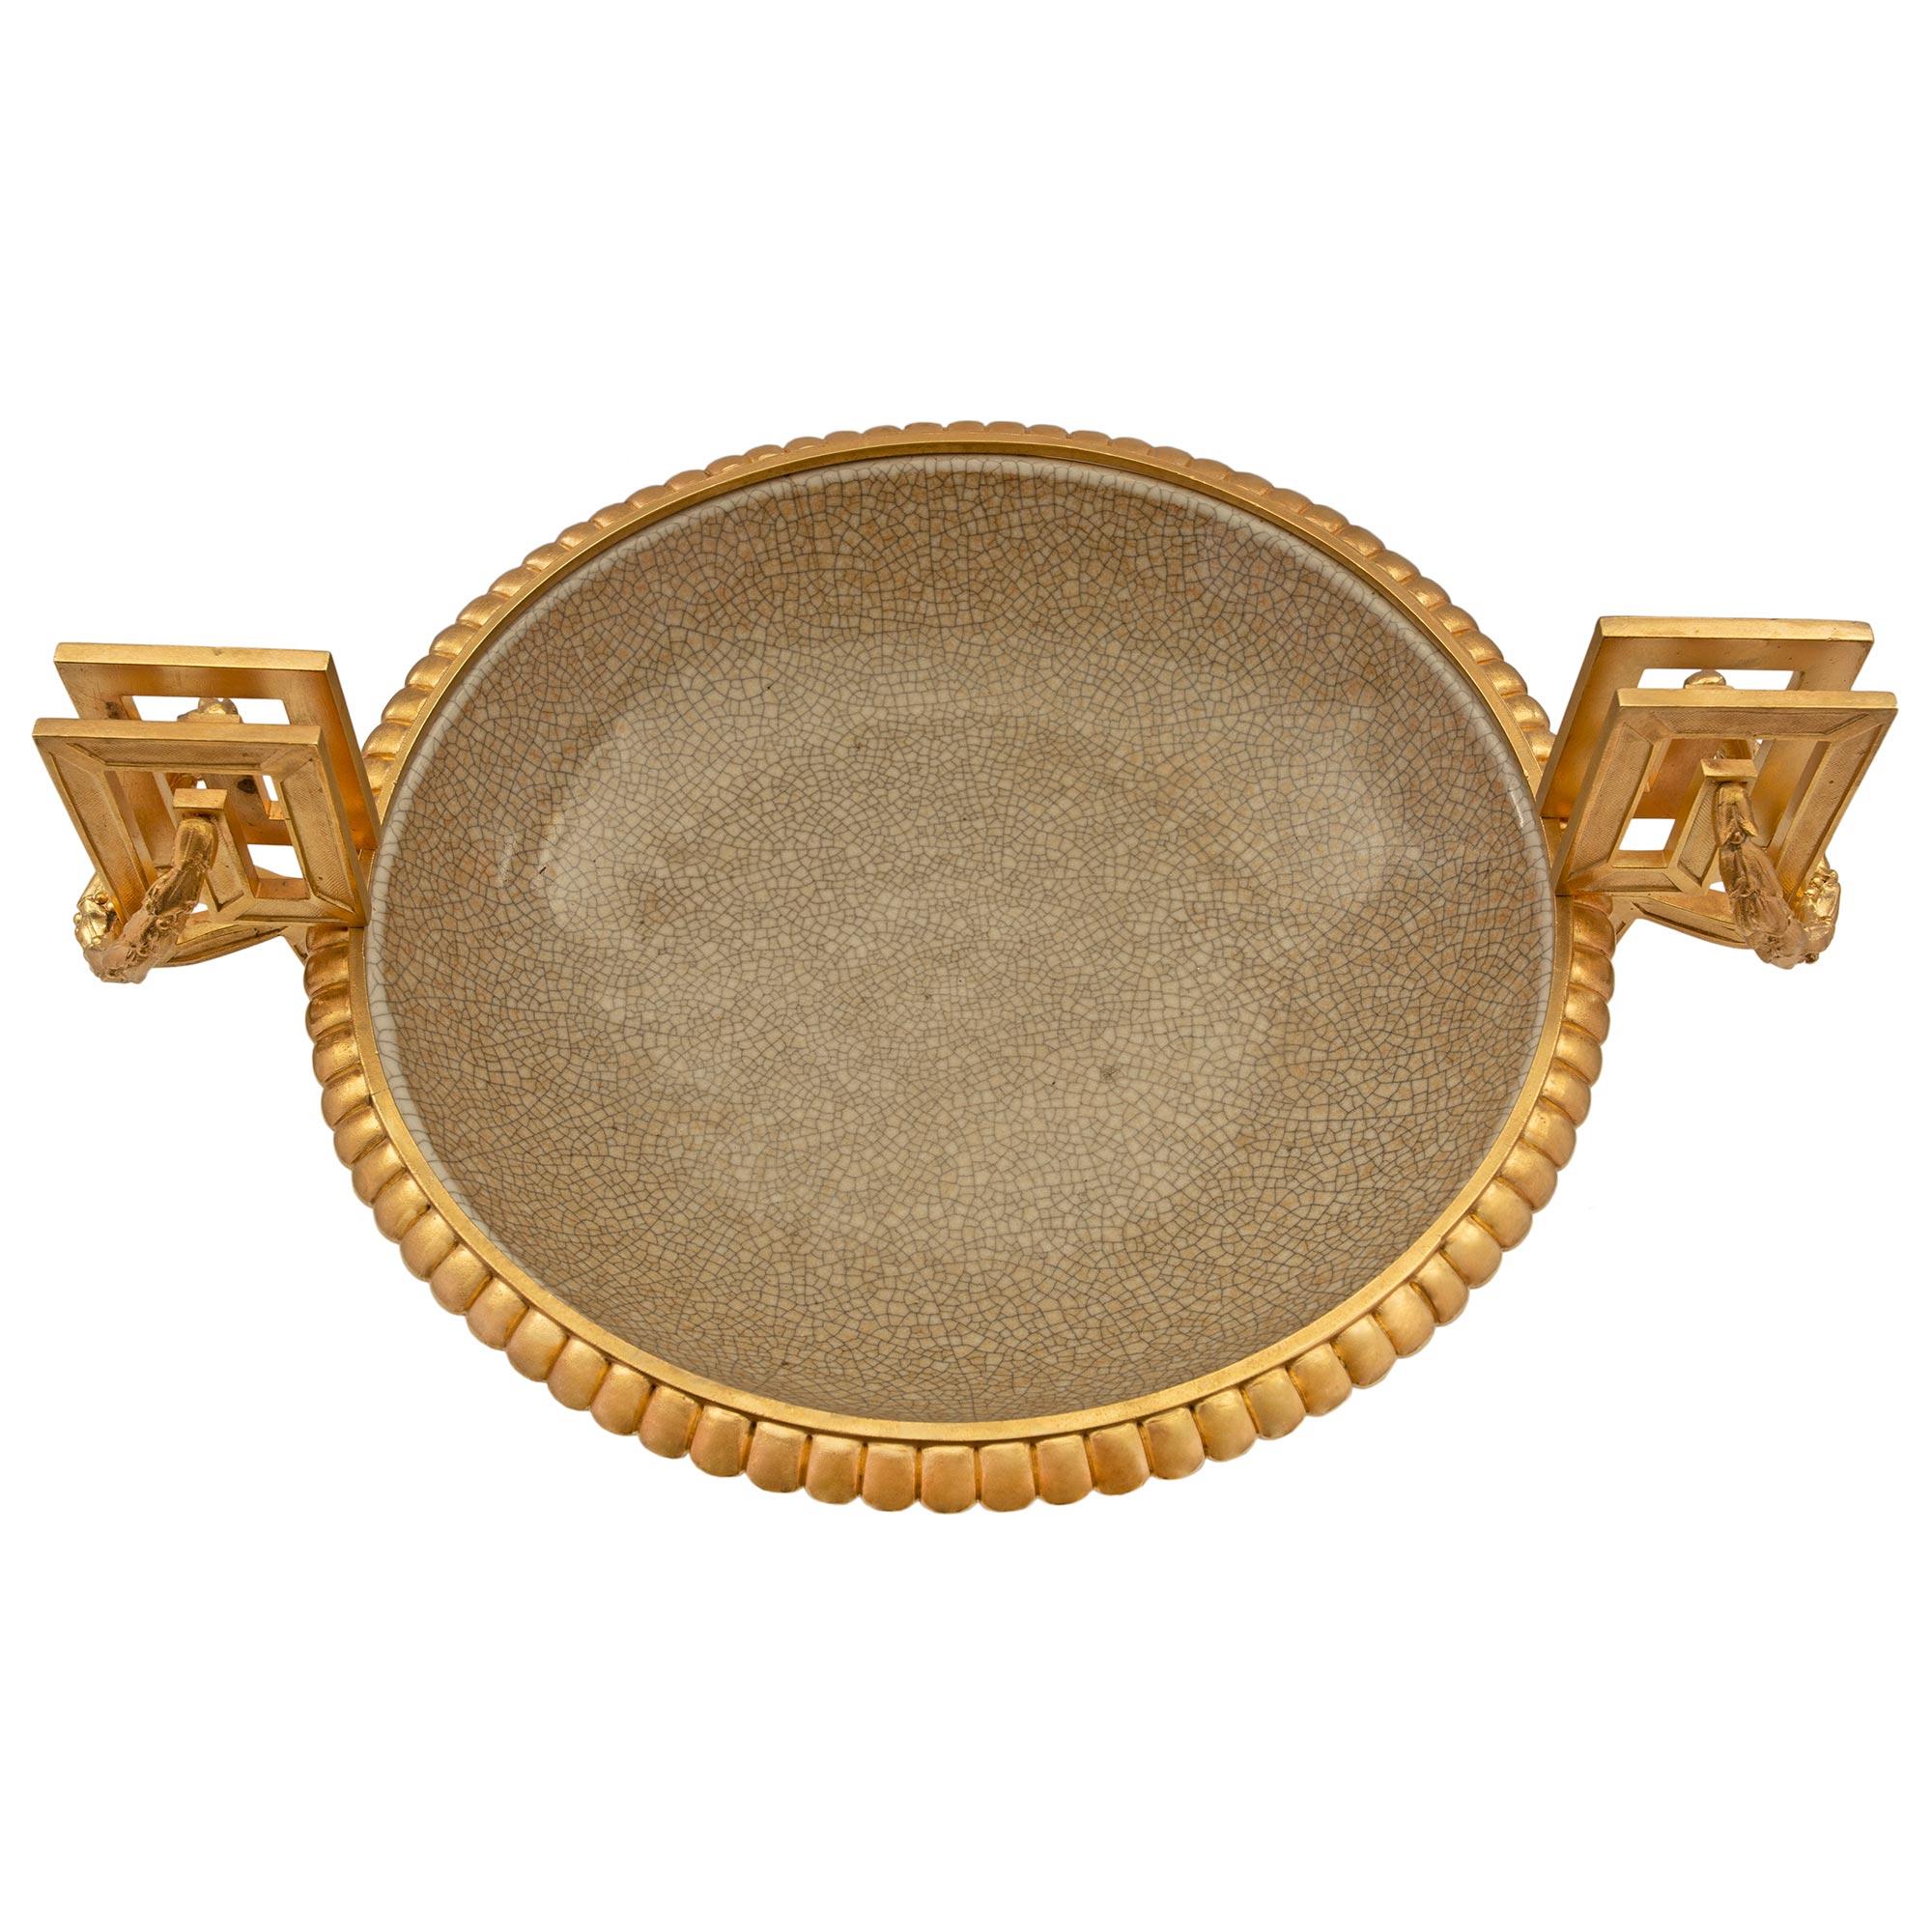 Magnifique coupe en porcelaine d'exportation chinoise du 19e siècle avec des montures en bronze doré de style Louis XVI du 19e siècle. L'urne est surélevée de huit pieds et possède une belle base carrée en bronze doré avec des coins concaves